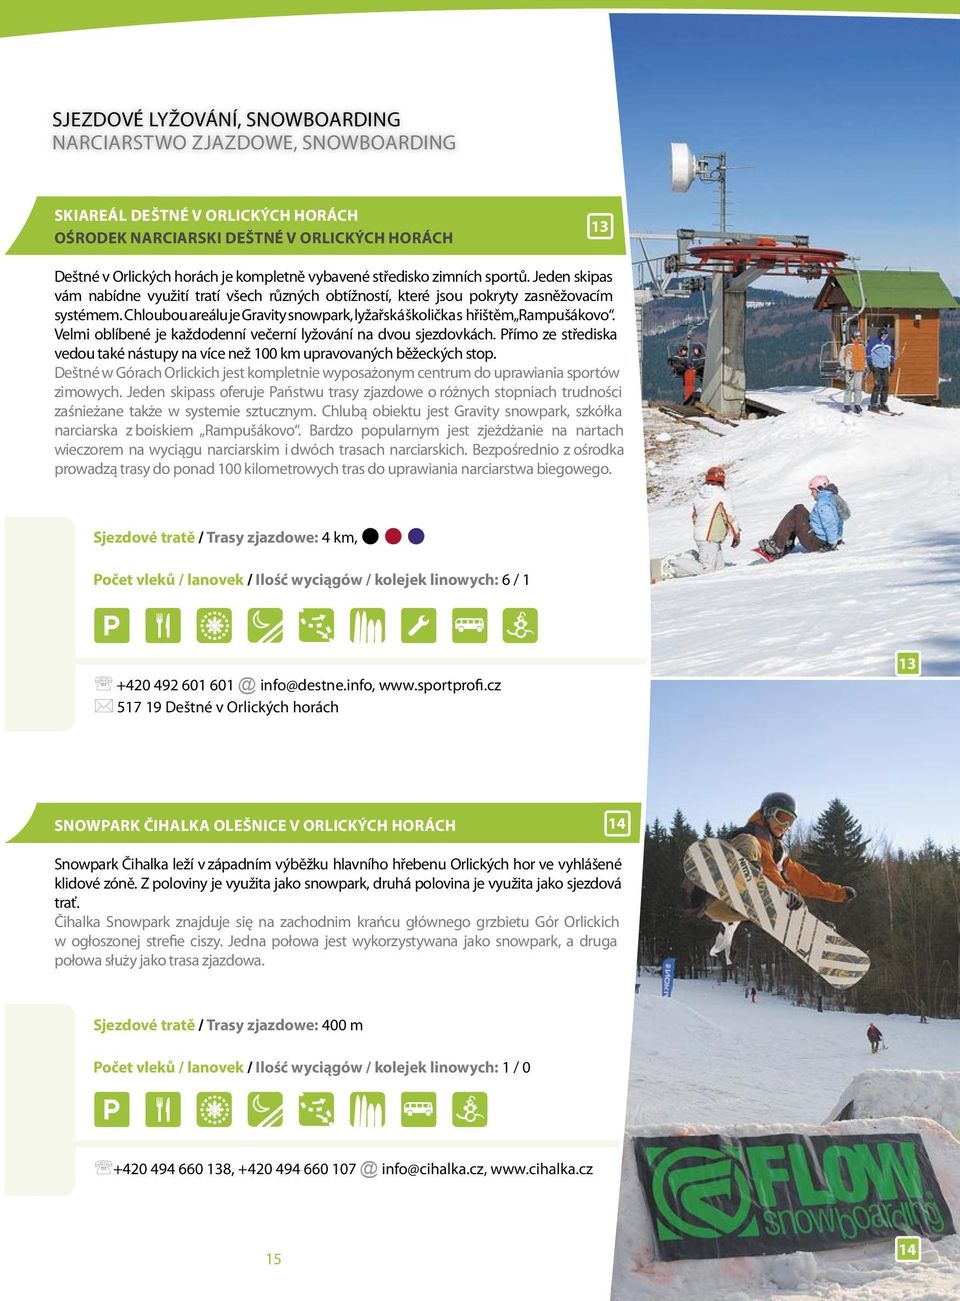 Chloubou areálu je Gravity snowpark, lyžařská školička s hřištěm Rampušákovo. Velmi oblíbené je každodenní večerní lyžování na dvou sjezdovkách.